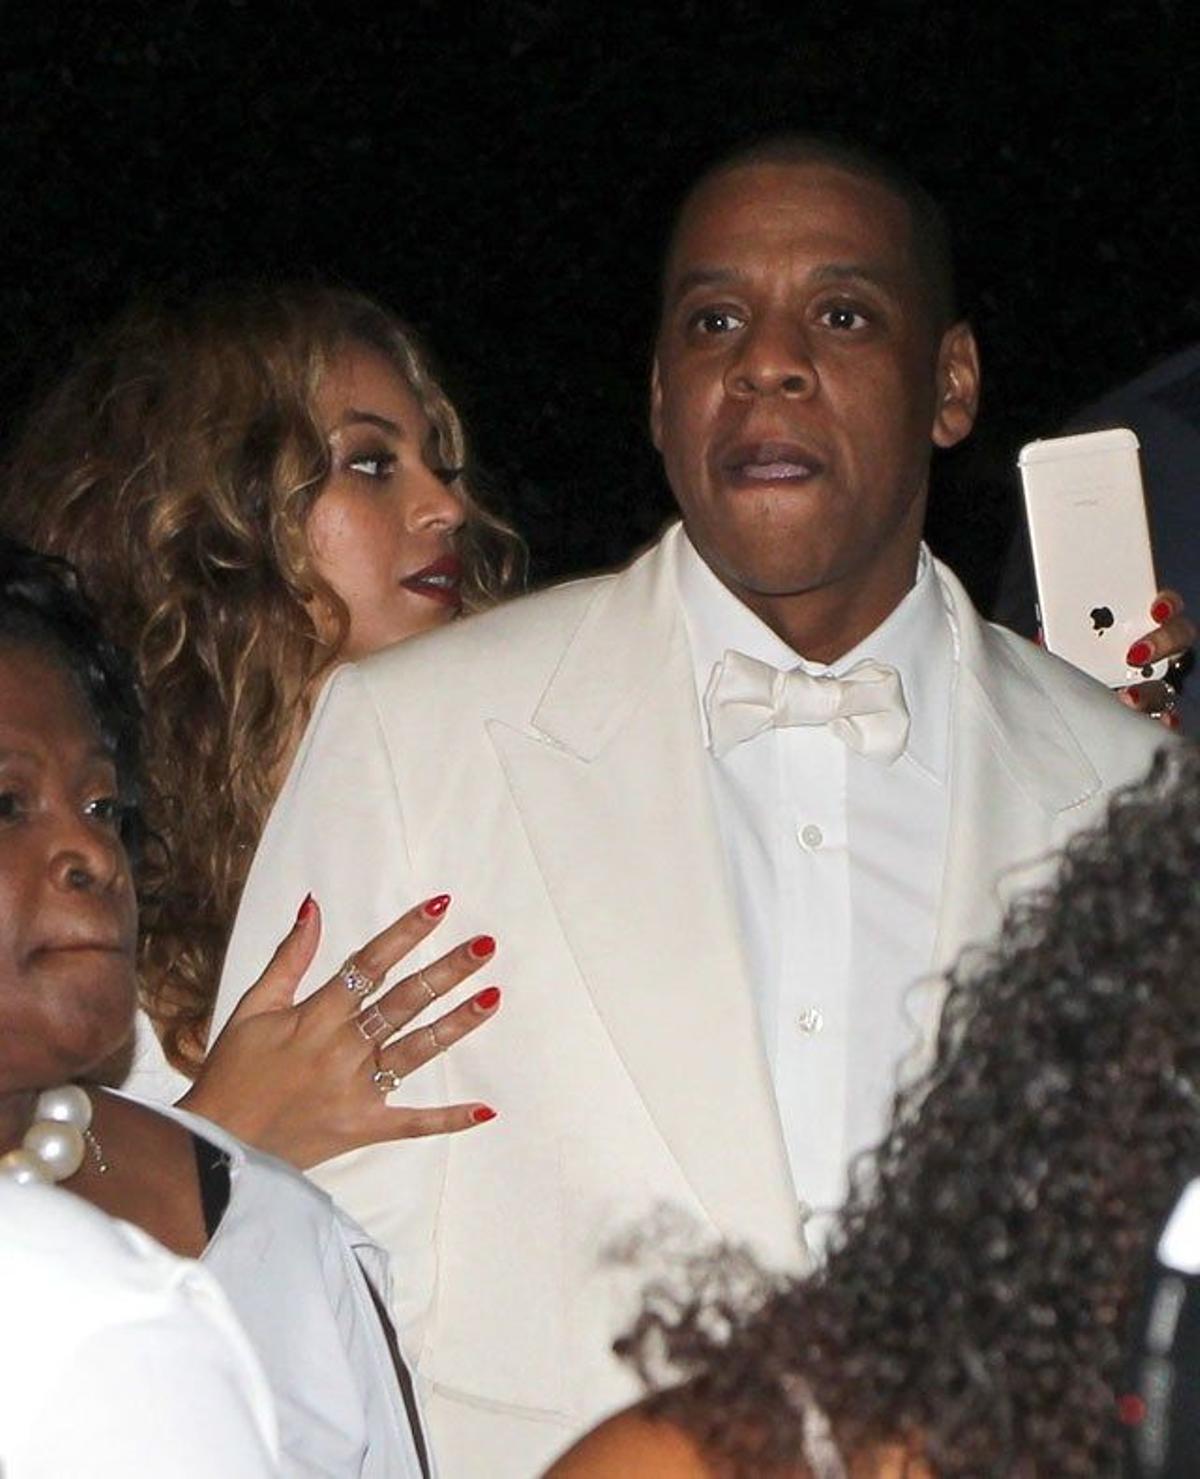 Beyoncé no quiere que se le escape ningún detalle de la fiesta y lo graba con su móvil mientras se apoya en Jay Z